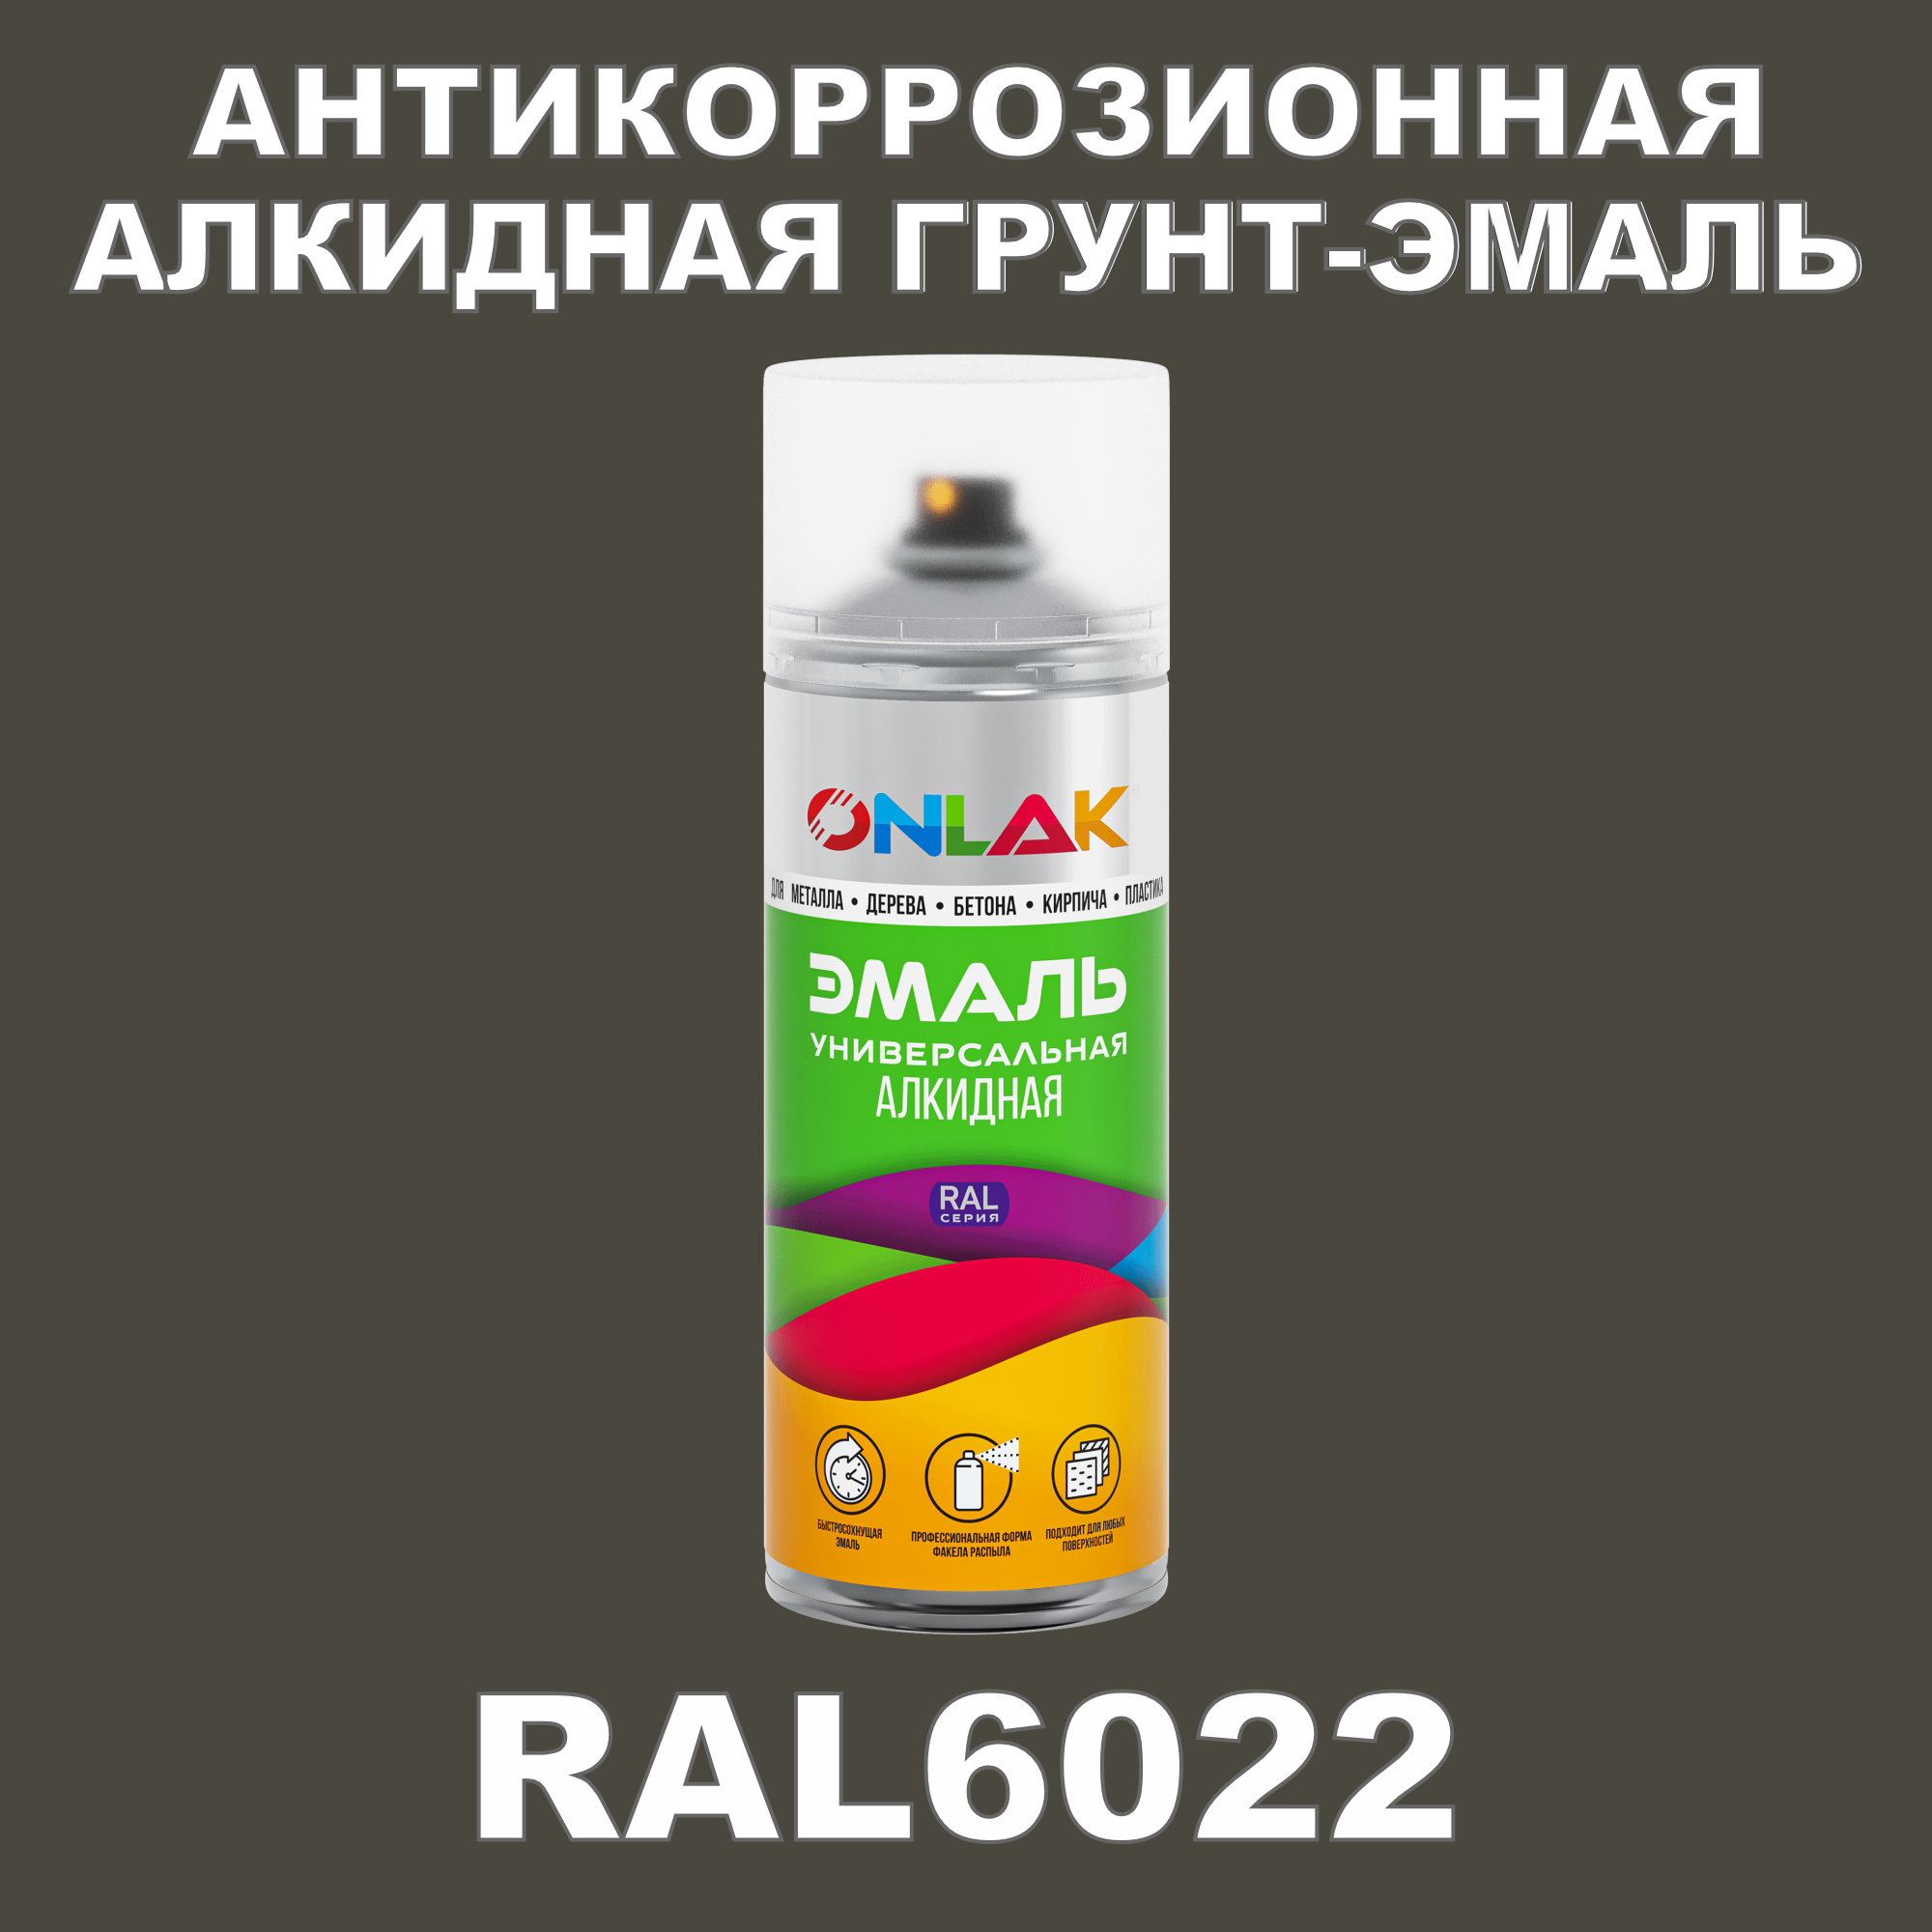 Антикоррозионная грунт-эмаль ONLAK RAL6022 матовая для металла и защиты от ржавчины